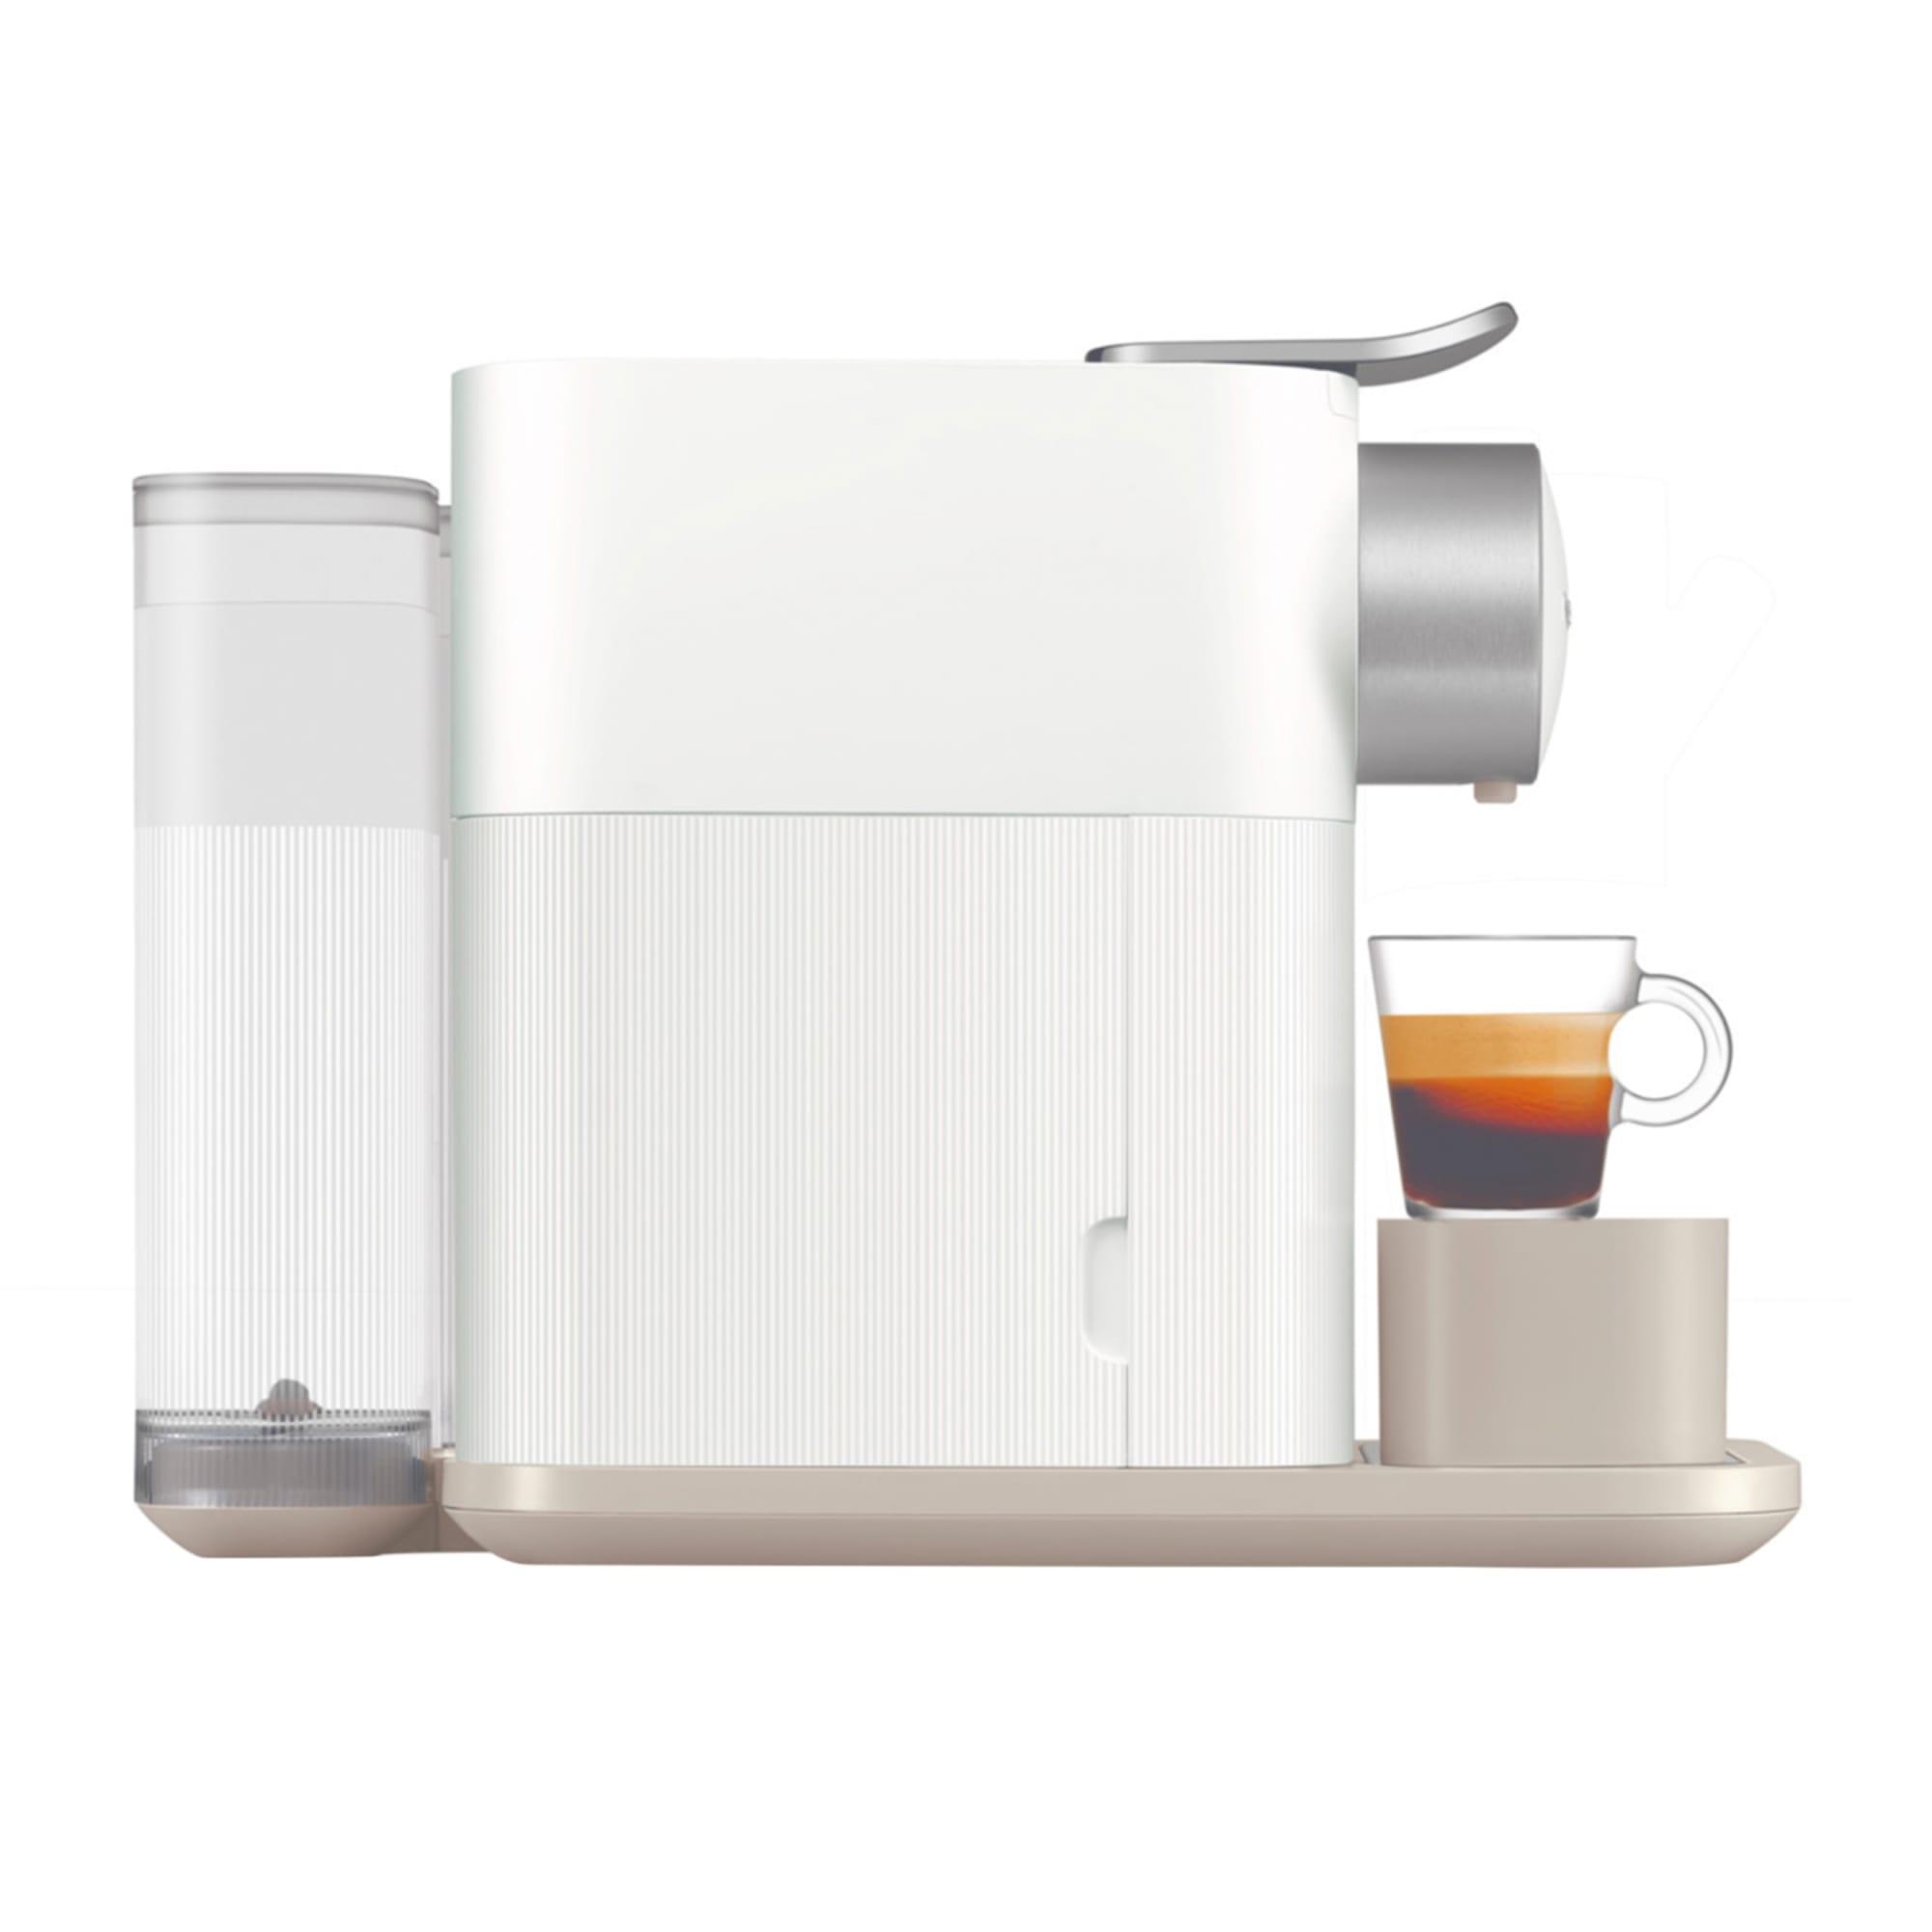 DeLonghi Nespresso Gran Lattisima EN650W Automatic Capsule Coffee Machine White Image 7